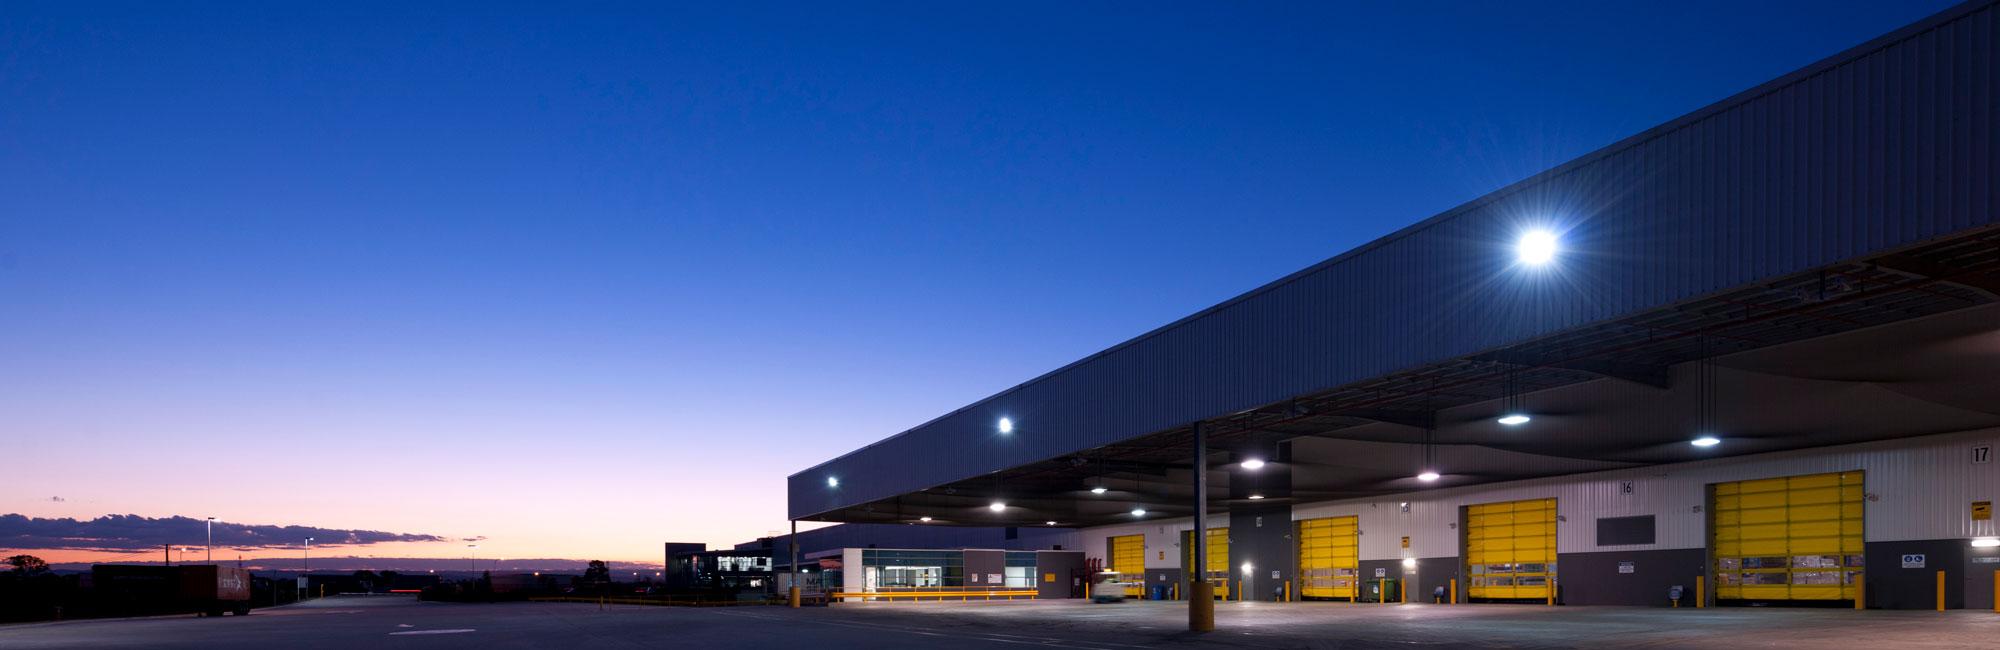 Interlink Industrial Estate - Erskine Park warehouses